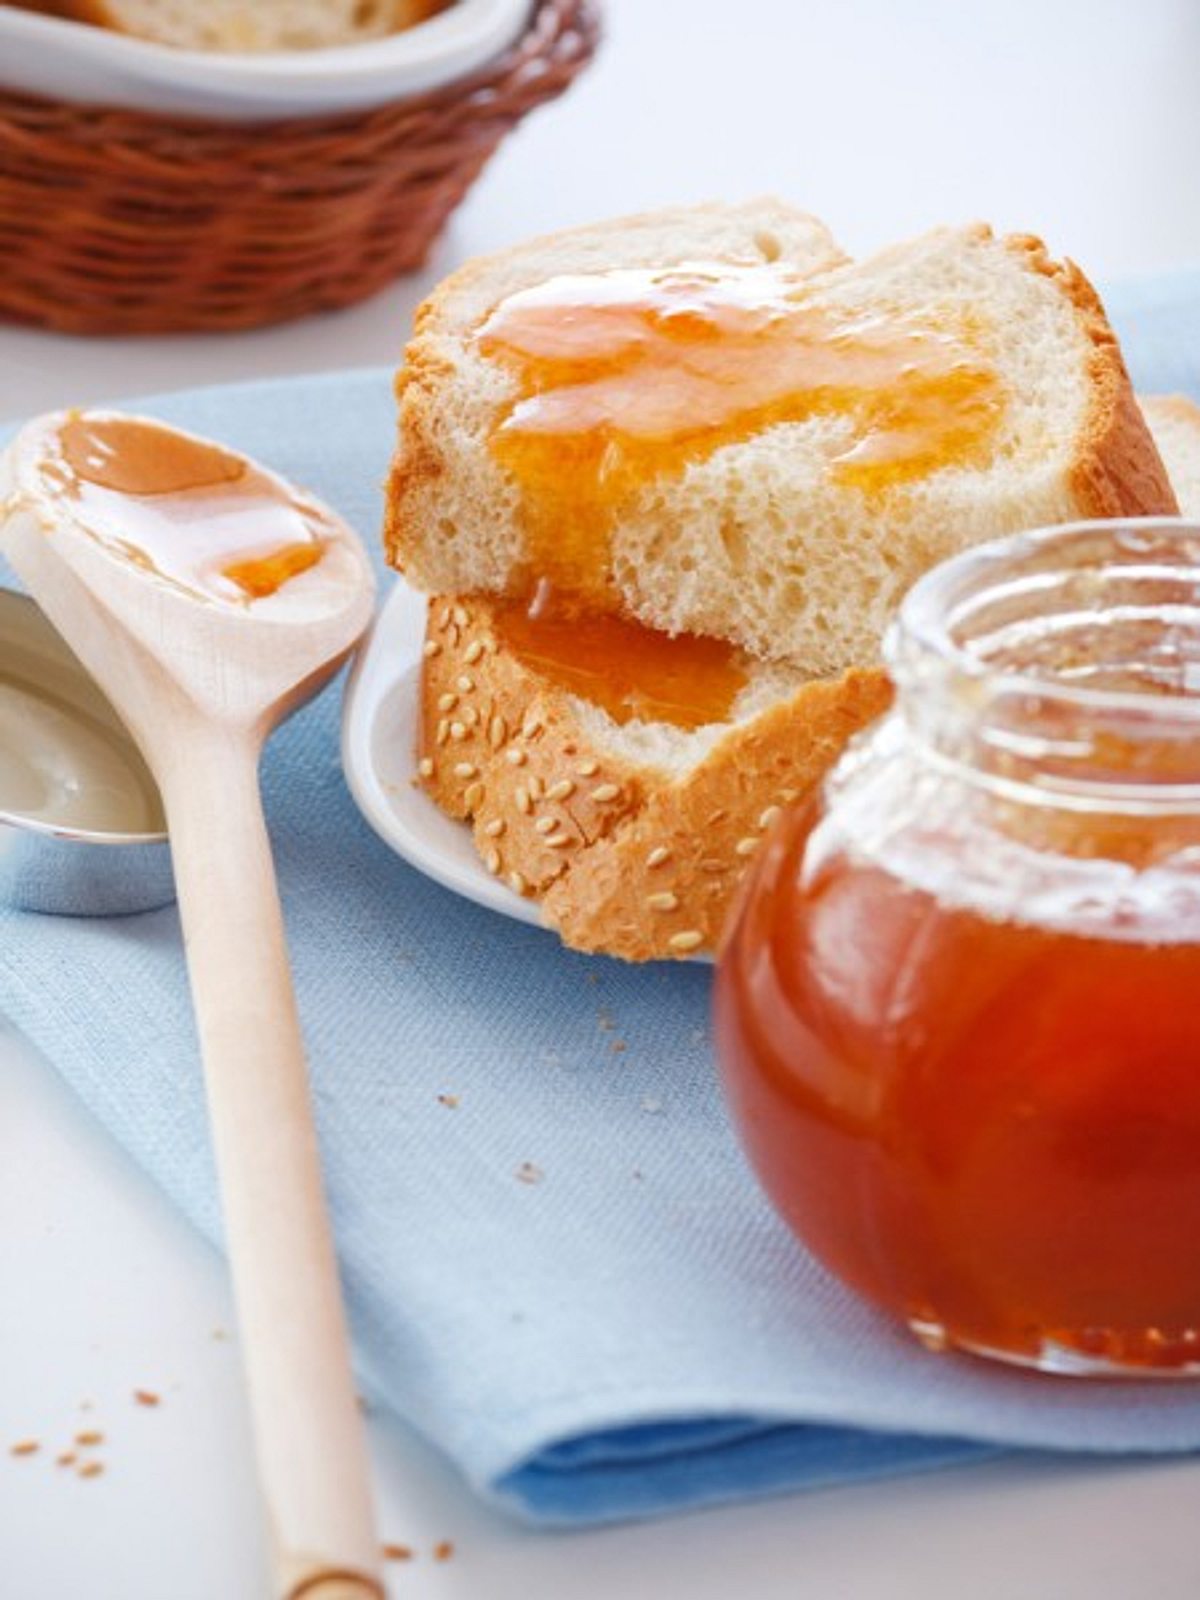 mit kilo honig pro kopf und jahr ist deutschland spitzenreiter im honigverbrauch